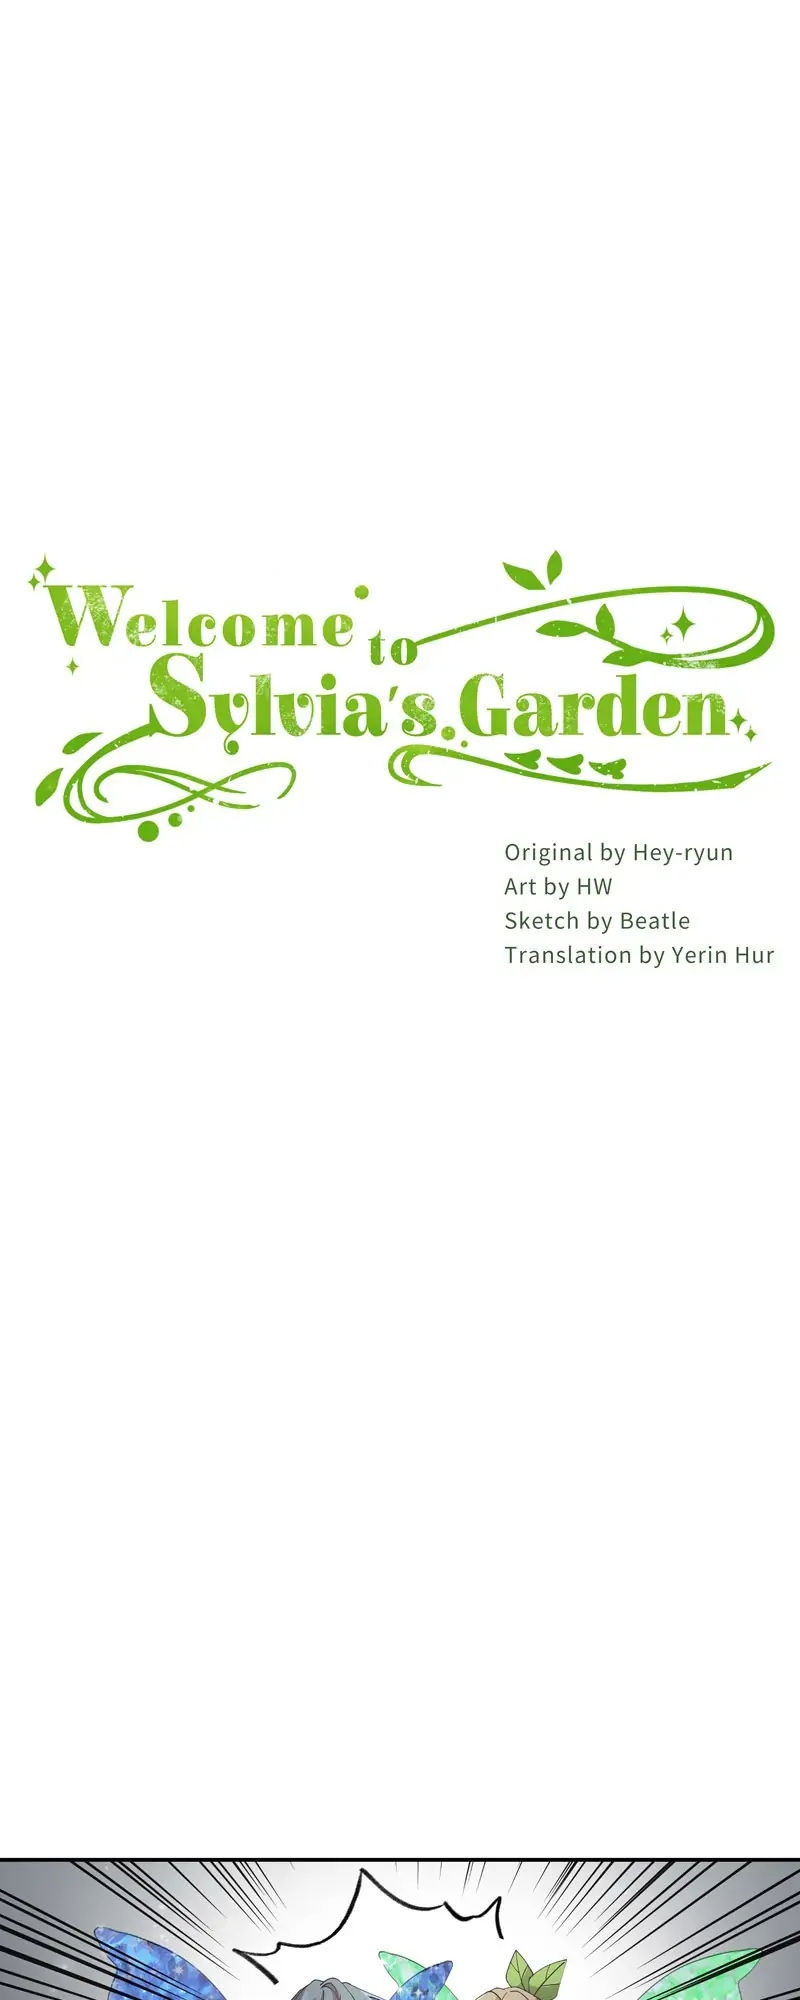 Welcome to Sylvia's Garden 58 (1)